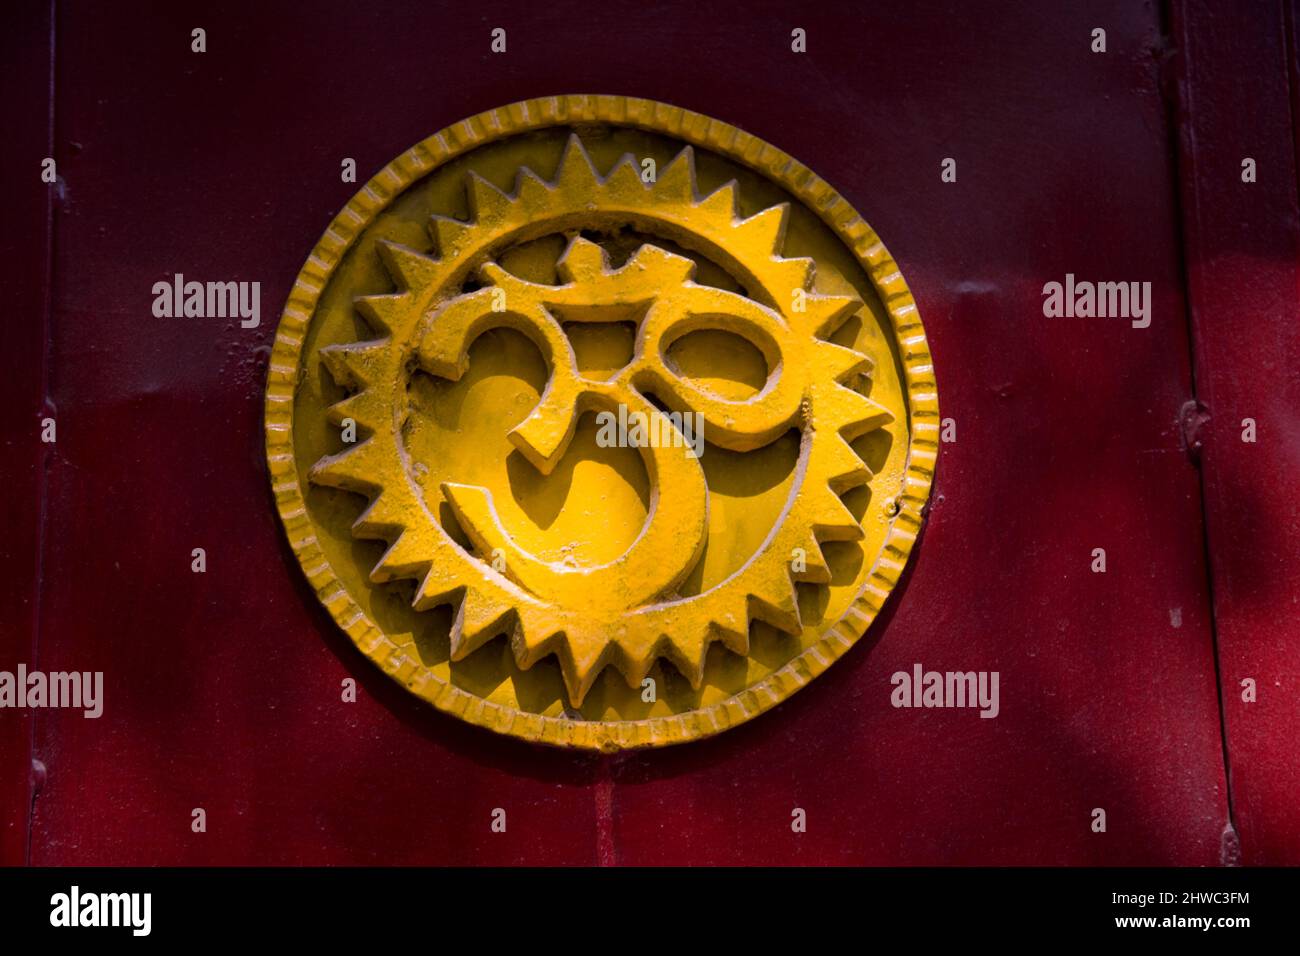 India. meditation. aum. aum symbol, mum sign, indian religion, symbol Stock Photo